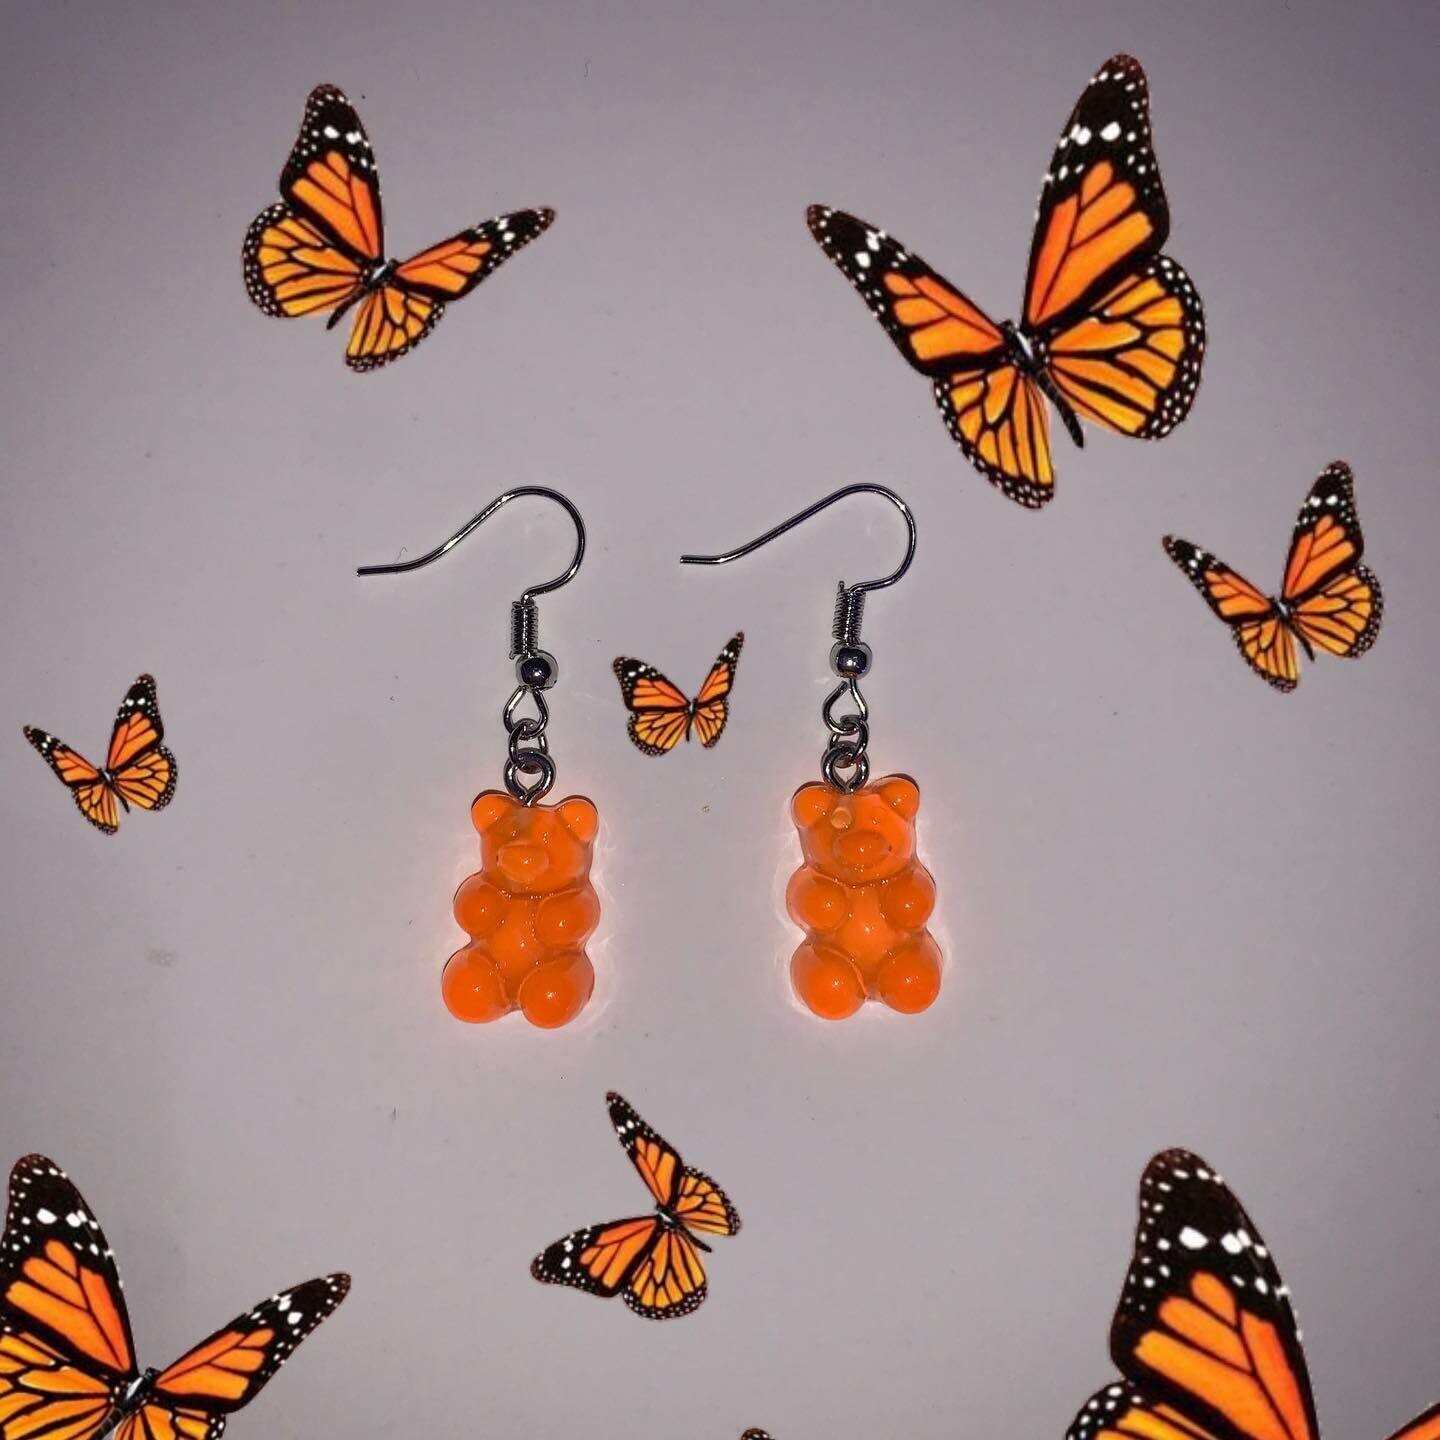 Orange gummy bear earrings